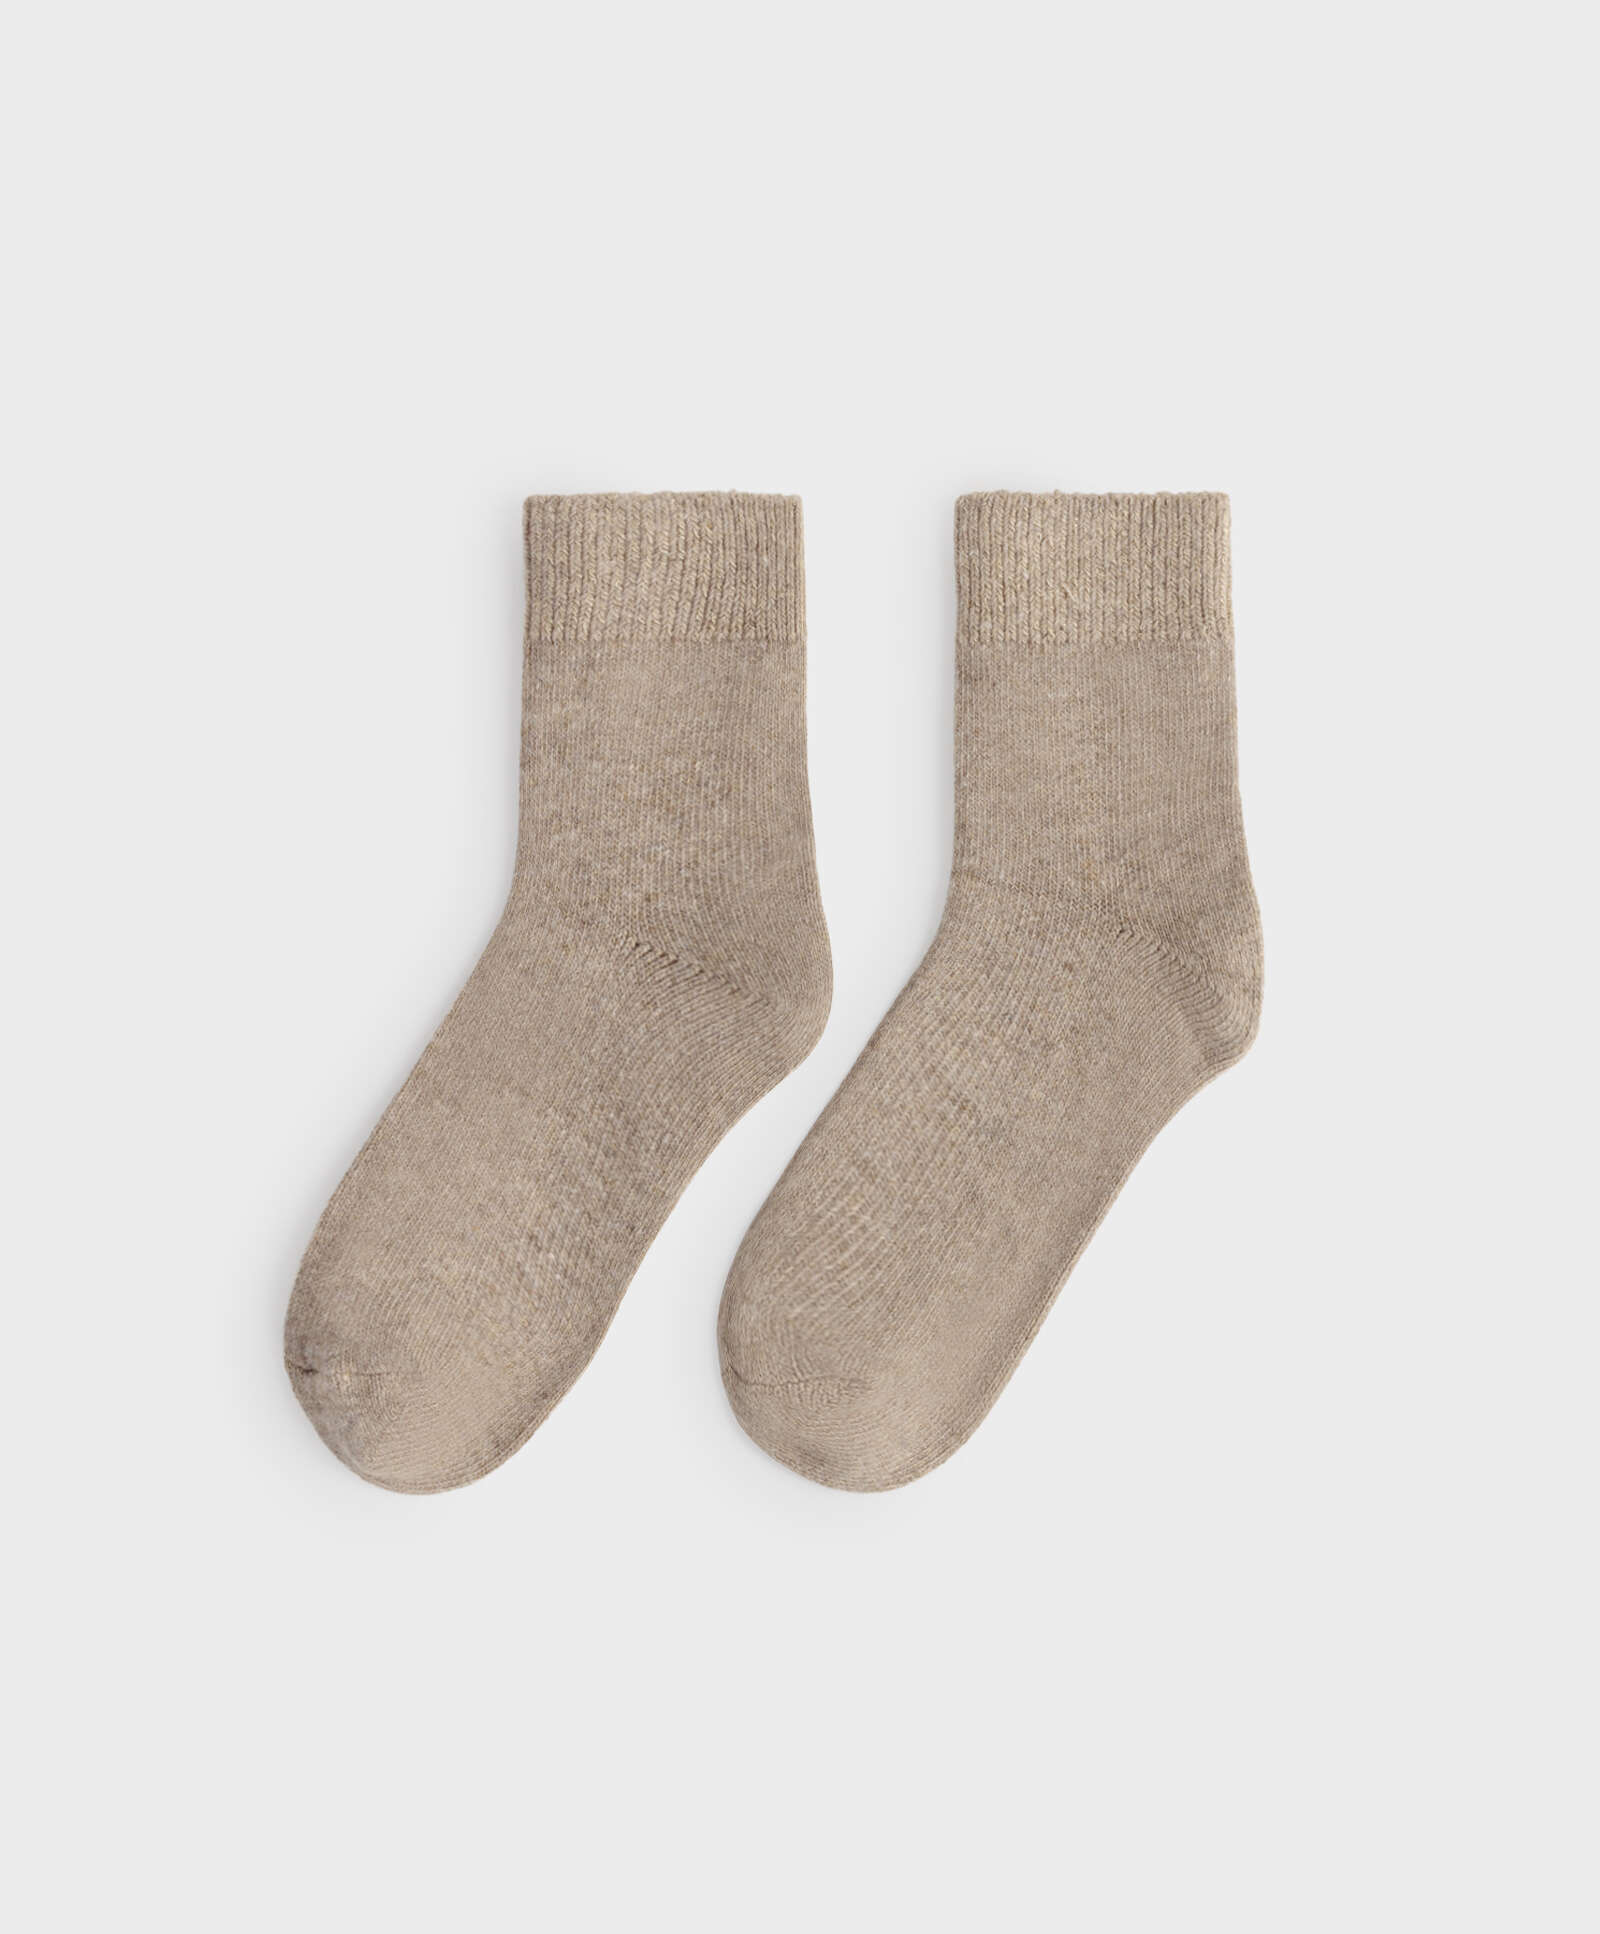 Viertellange Socken aus einem Wolle-Kaschmir-Mix